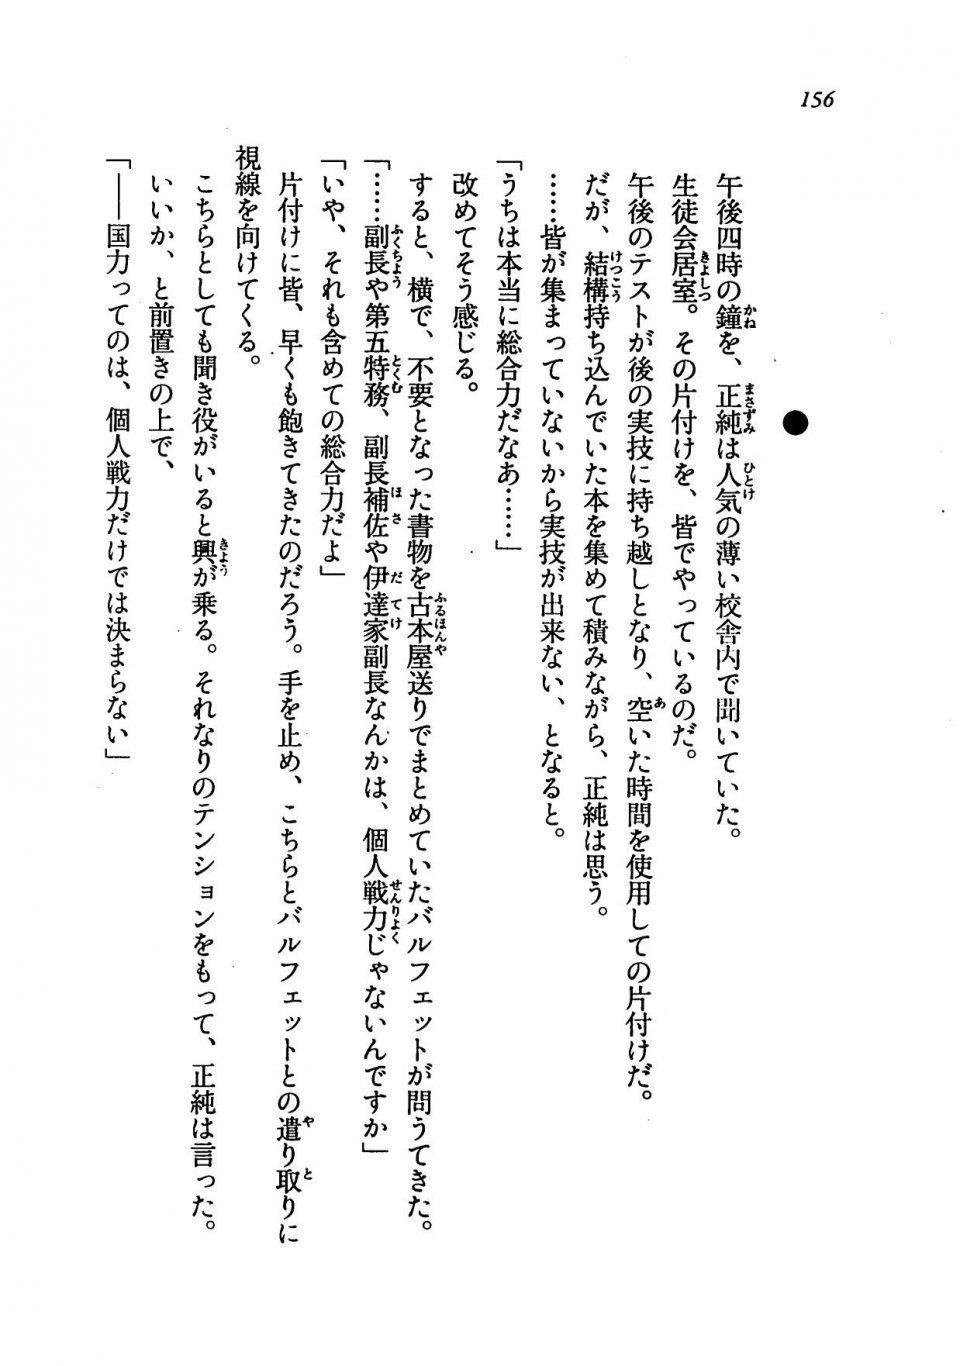 Kyoukai Senjou no Horizon LN Vol 19(8A) - Photo #156